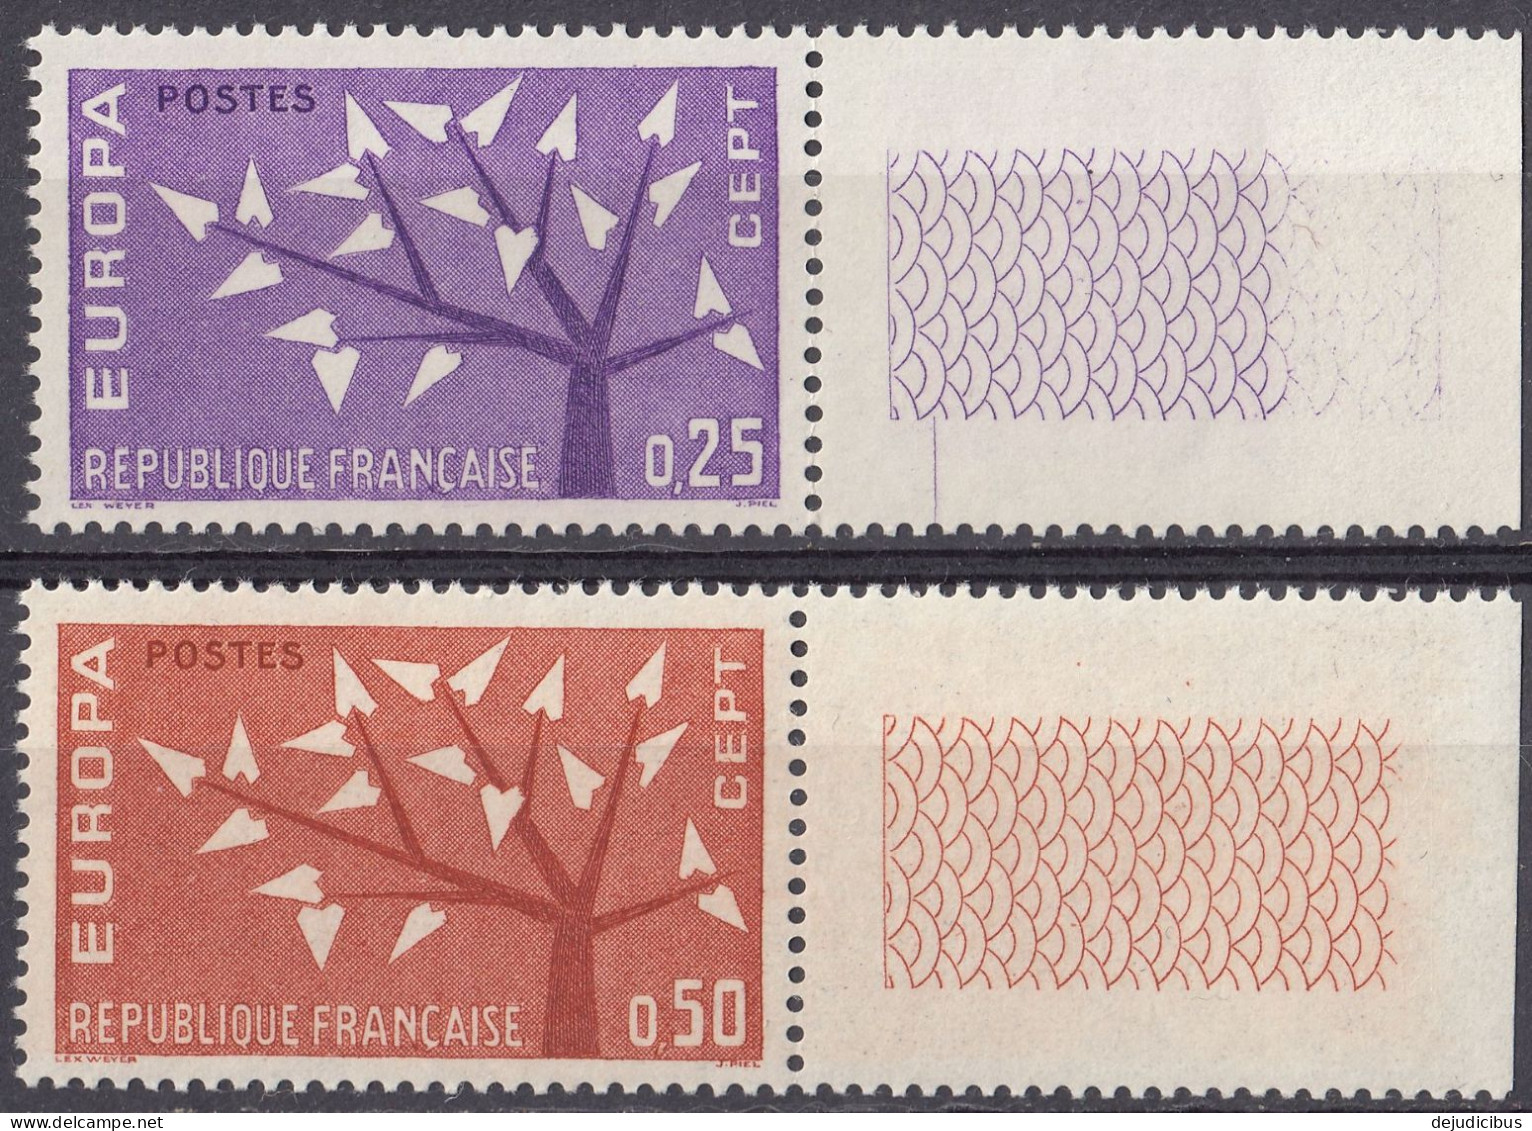 FRANCE - 1962 - Serie Completa Formata Da 2 Valori Nuovi MNH: Yvert 1358/1359 Con Margini Di Foglio. - Unused Stamps